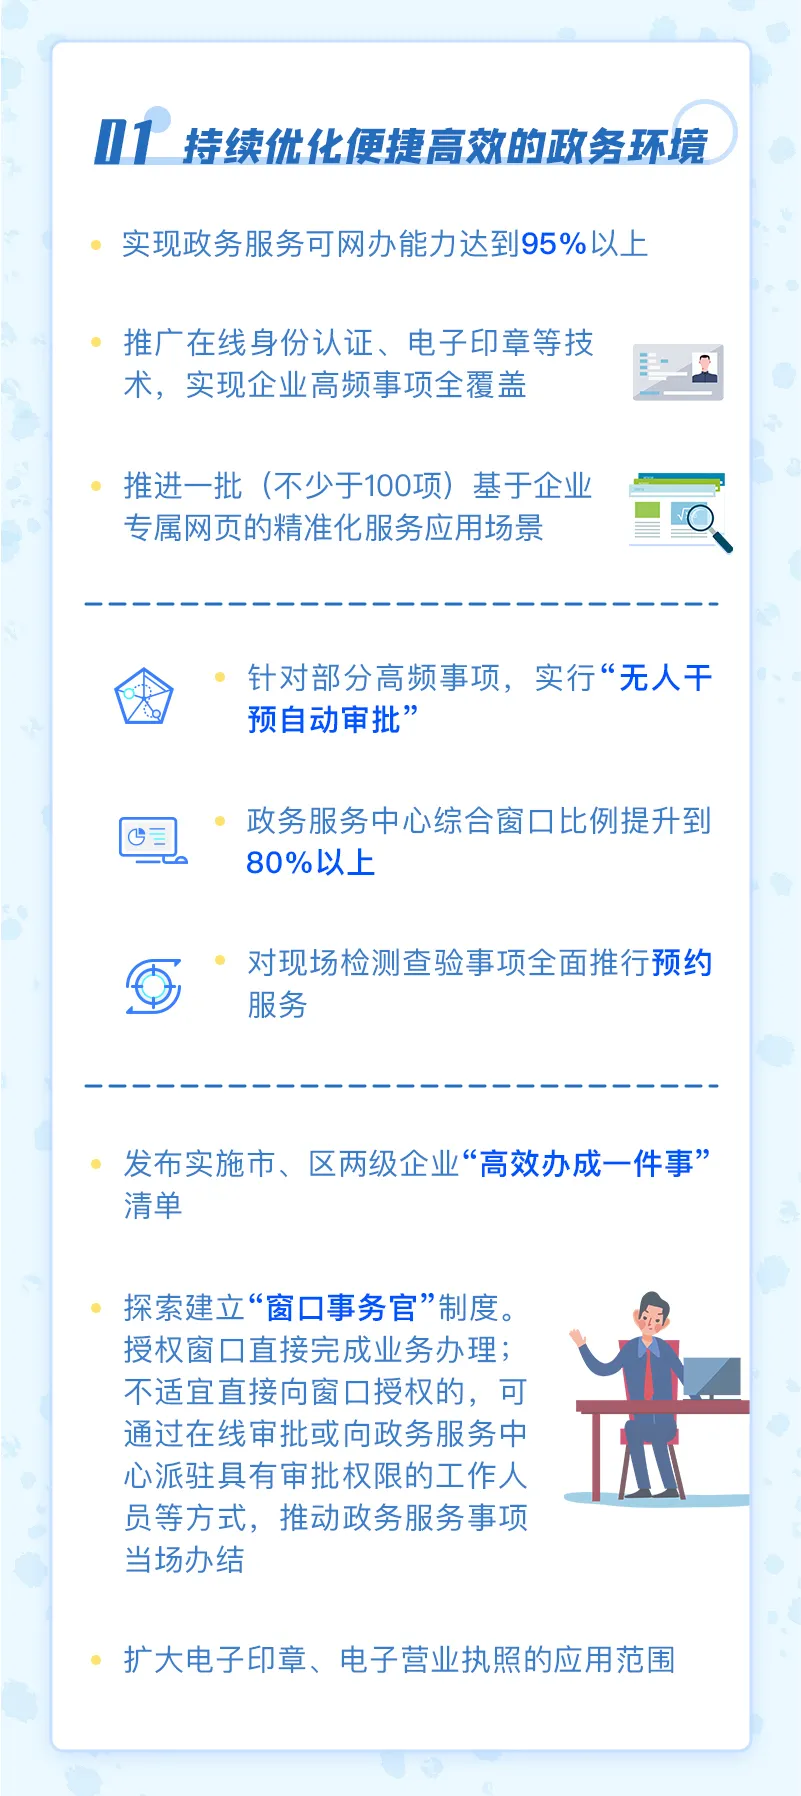 重磅！上海优化营商环境4.0版出炉，共31项任务207条举措